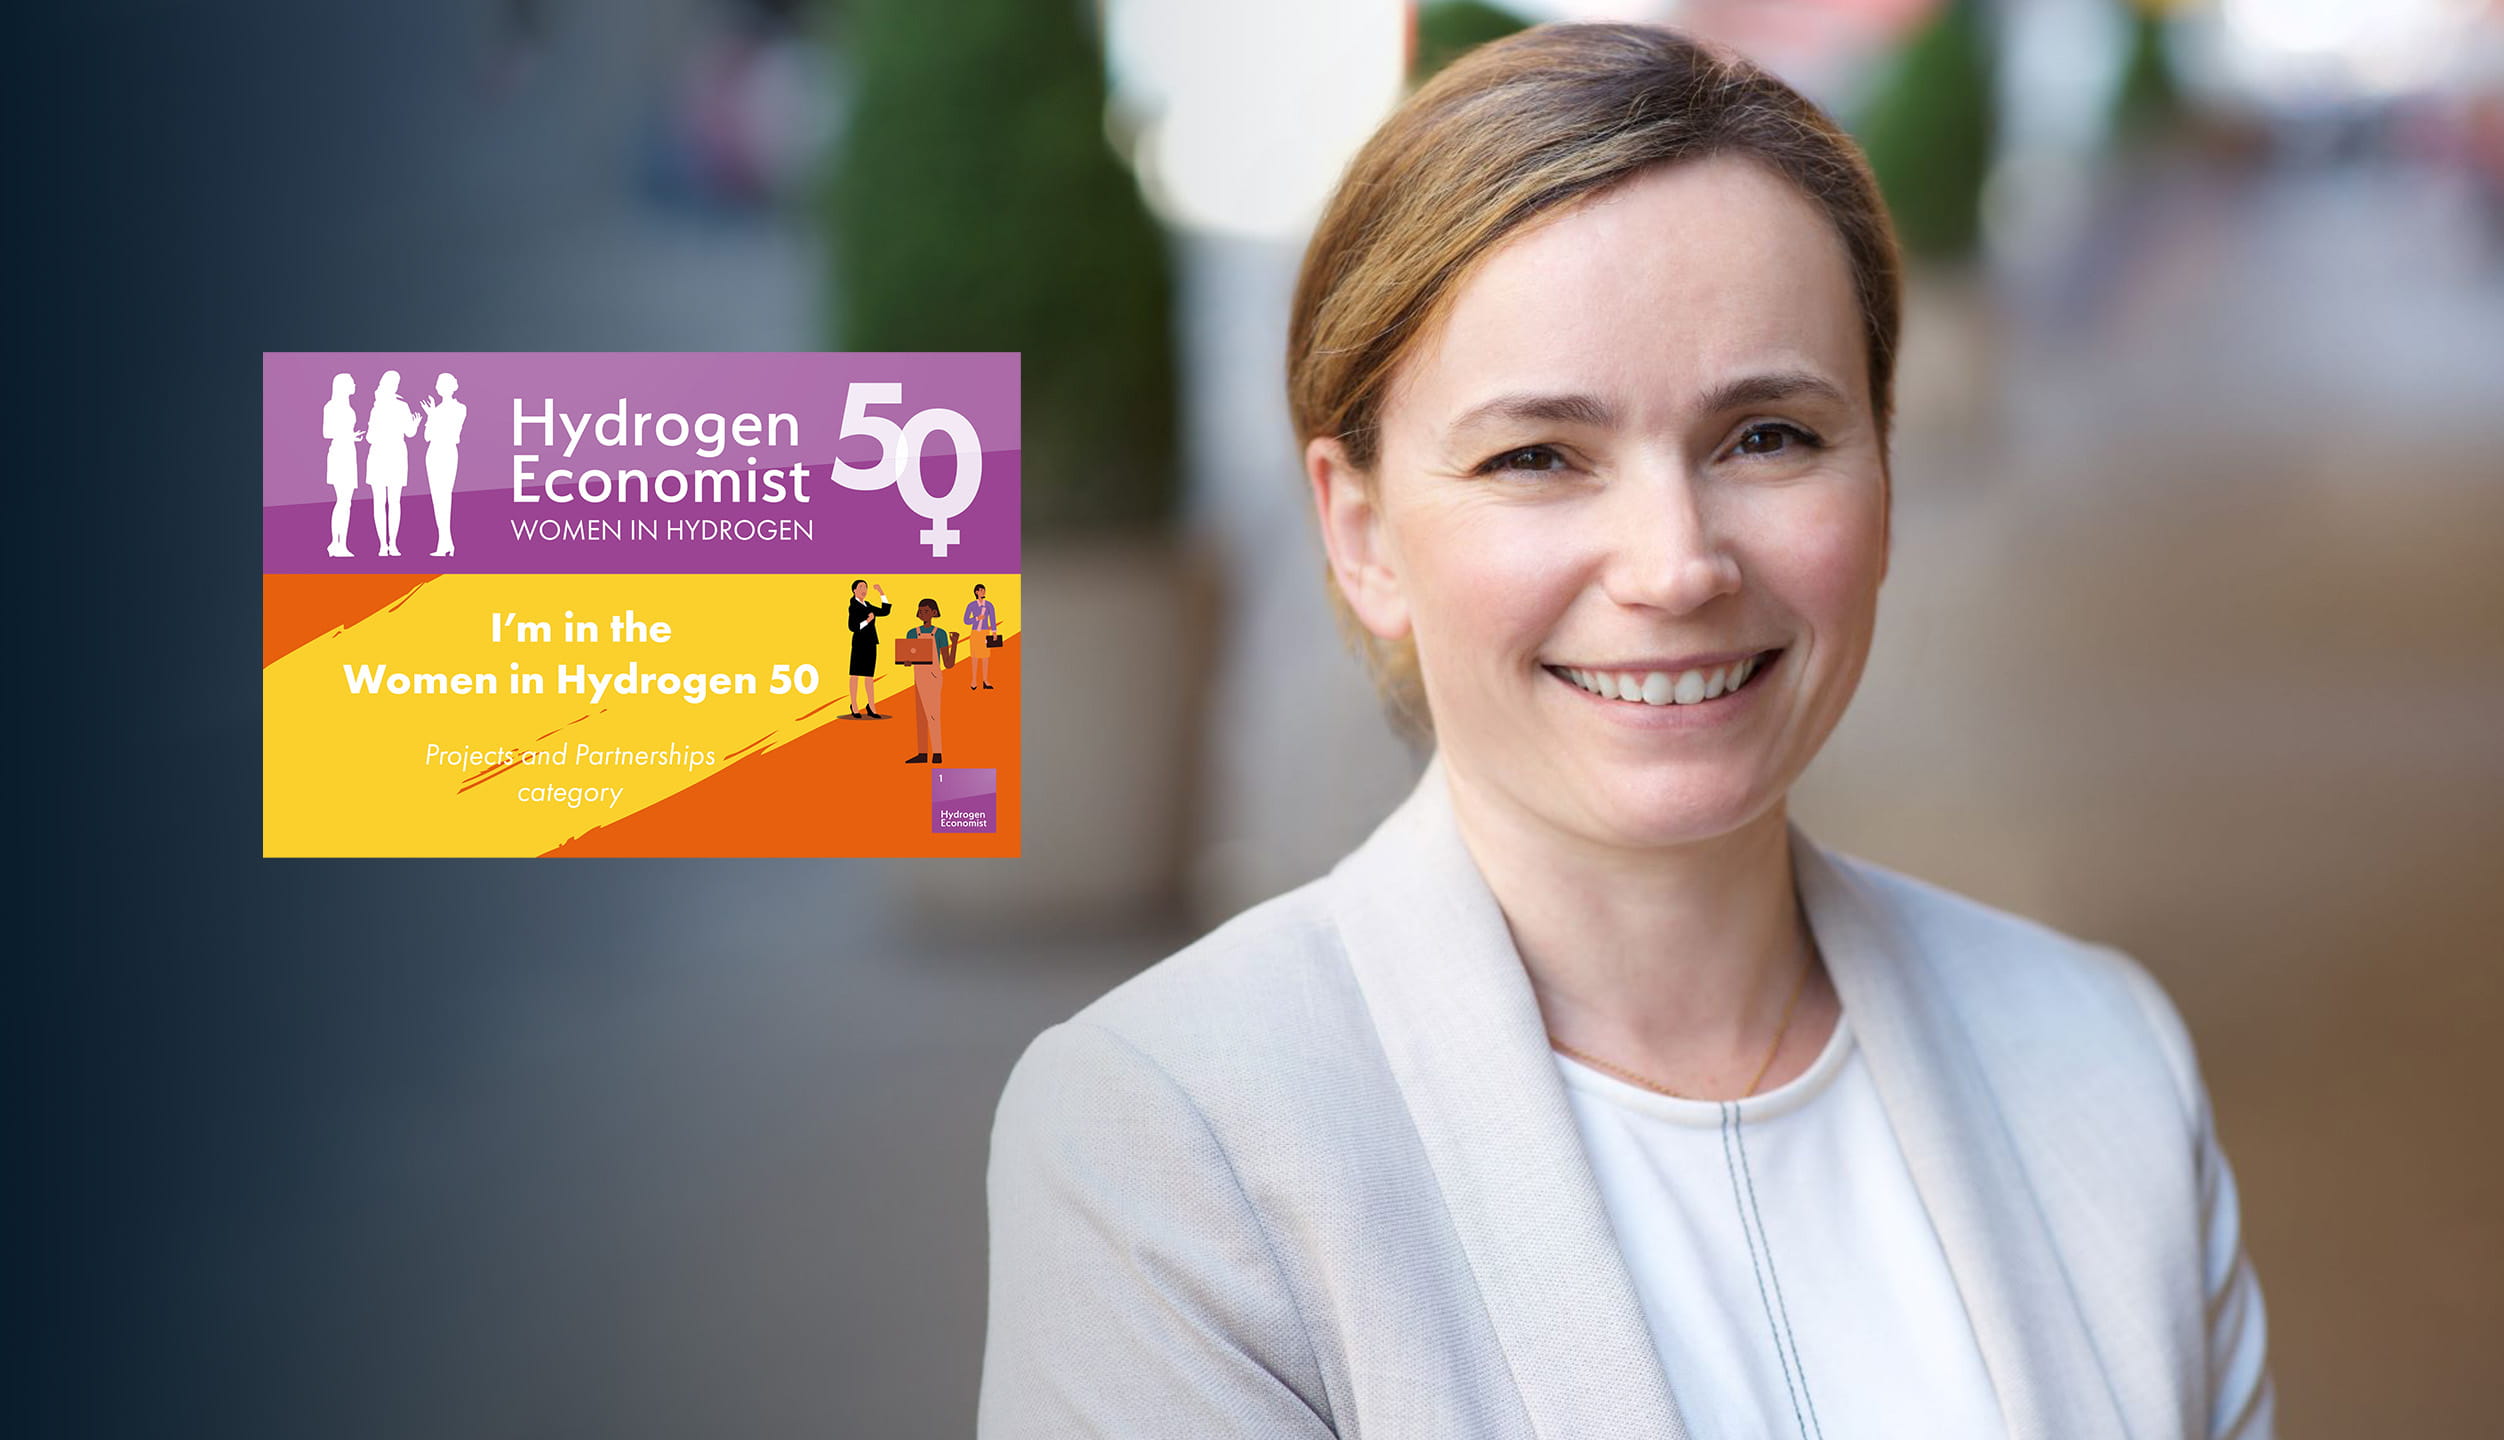 Women in Hydrogen 50 list by the Hydrogen Economist